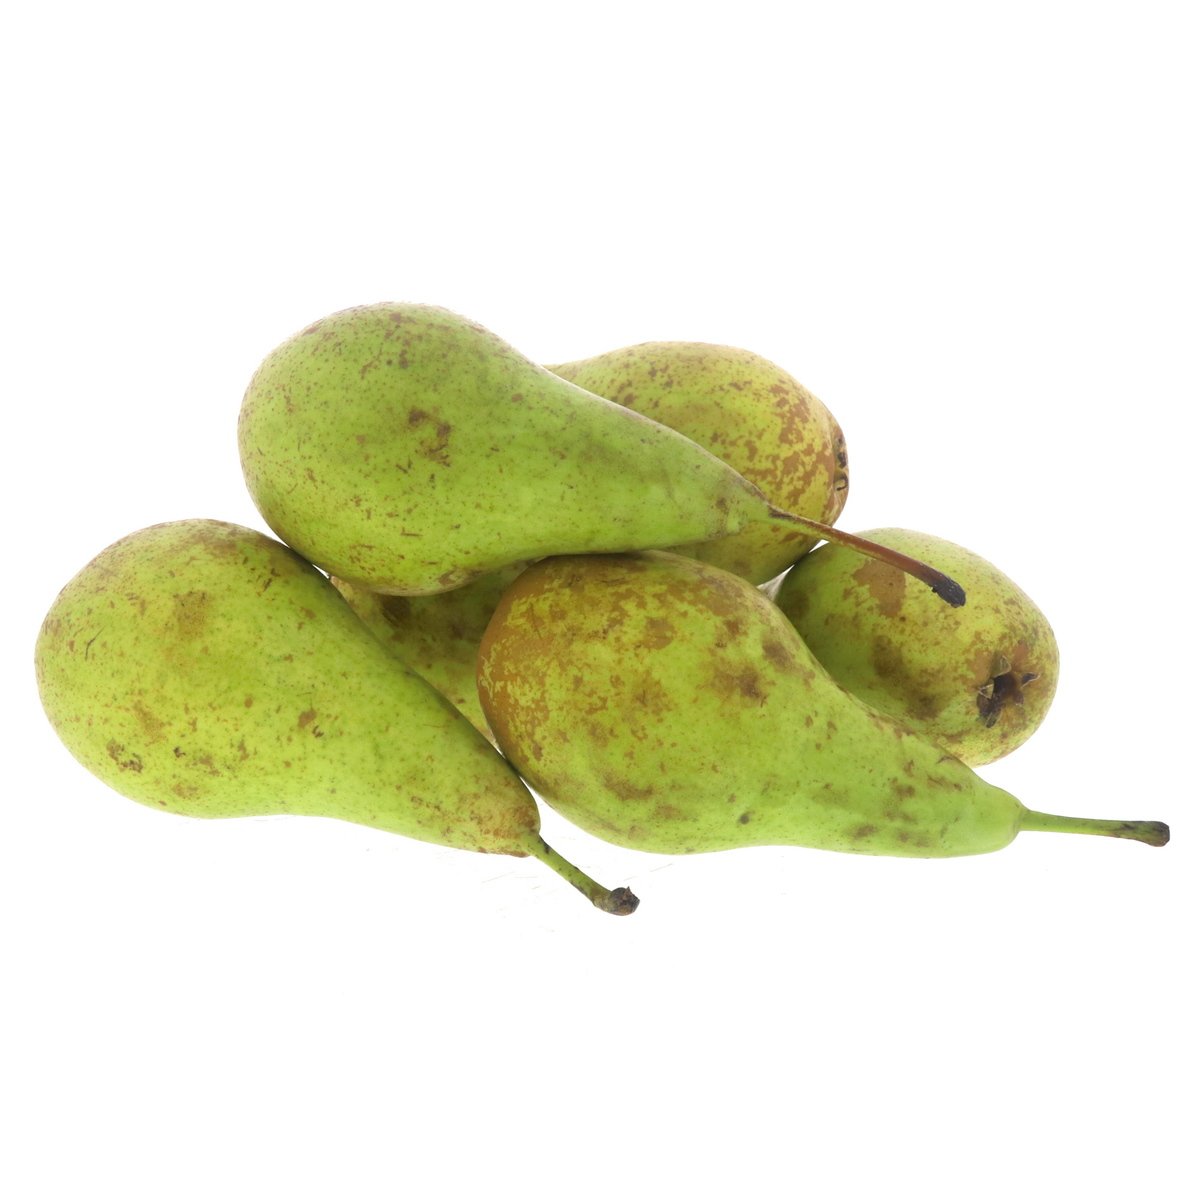 Pears Conference 1 Kg Online At Best Price Pears Lulu Uae 